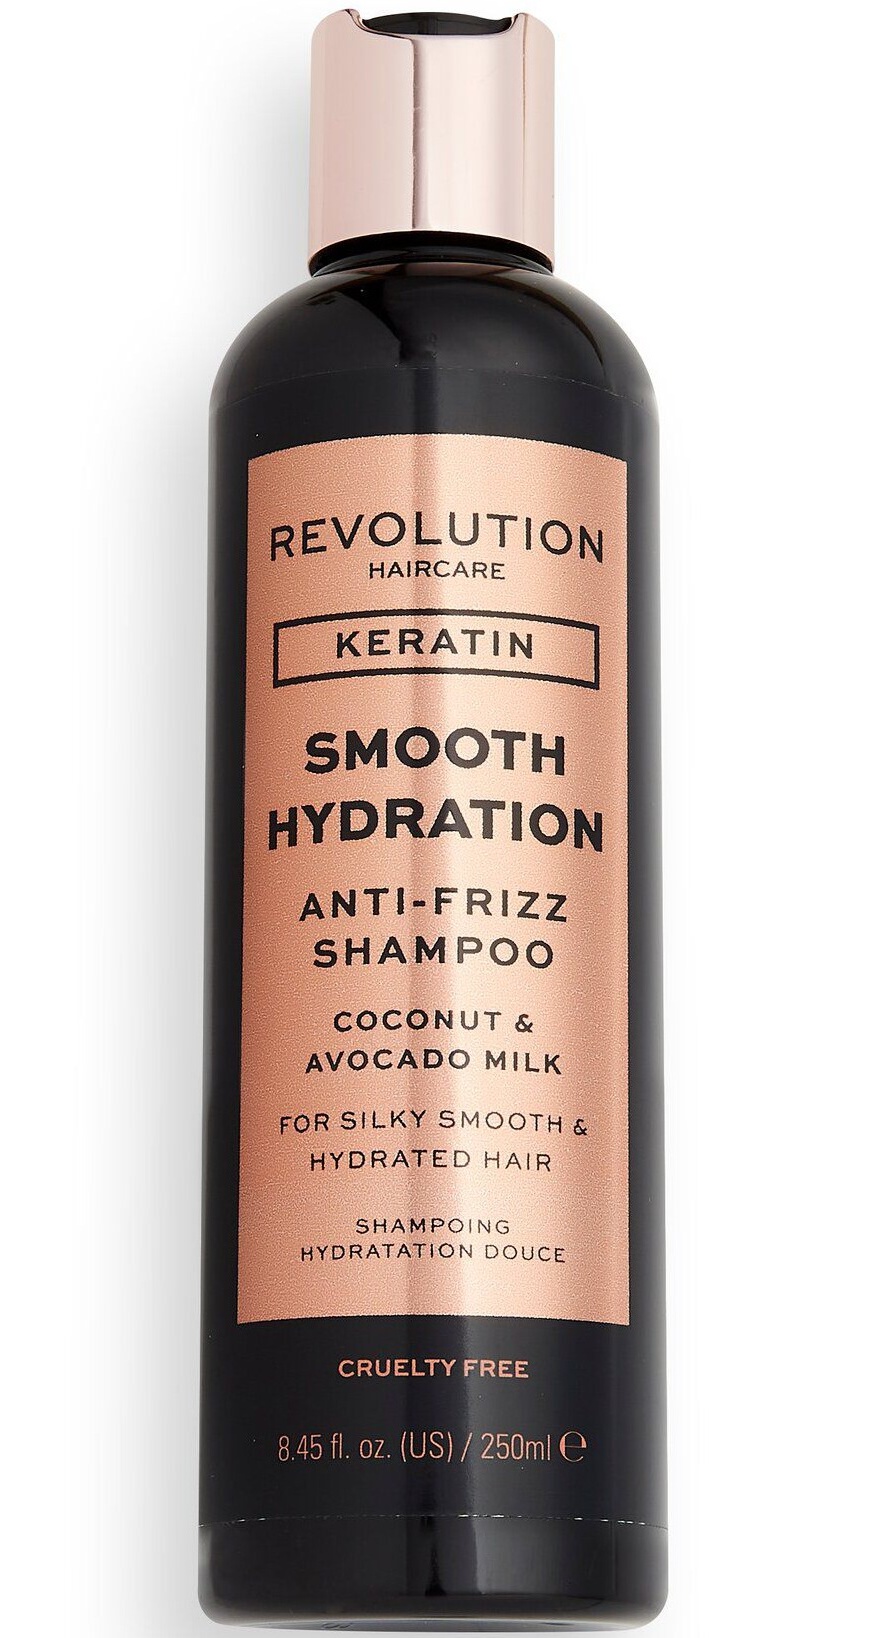 Revolution Haircare Keratin Smooth Hydration Anti-Frizz Shampoo